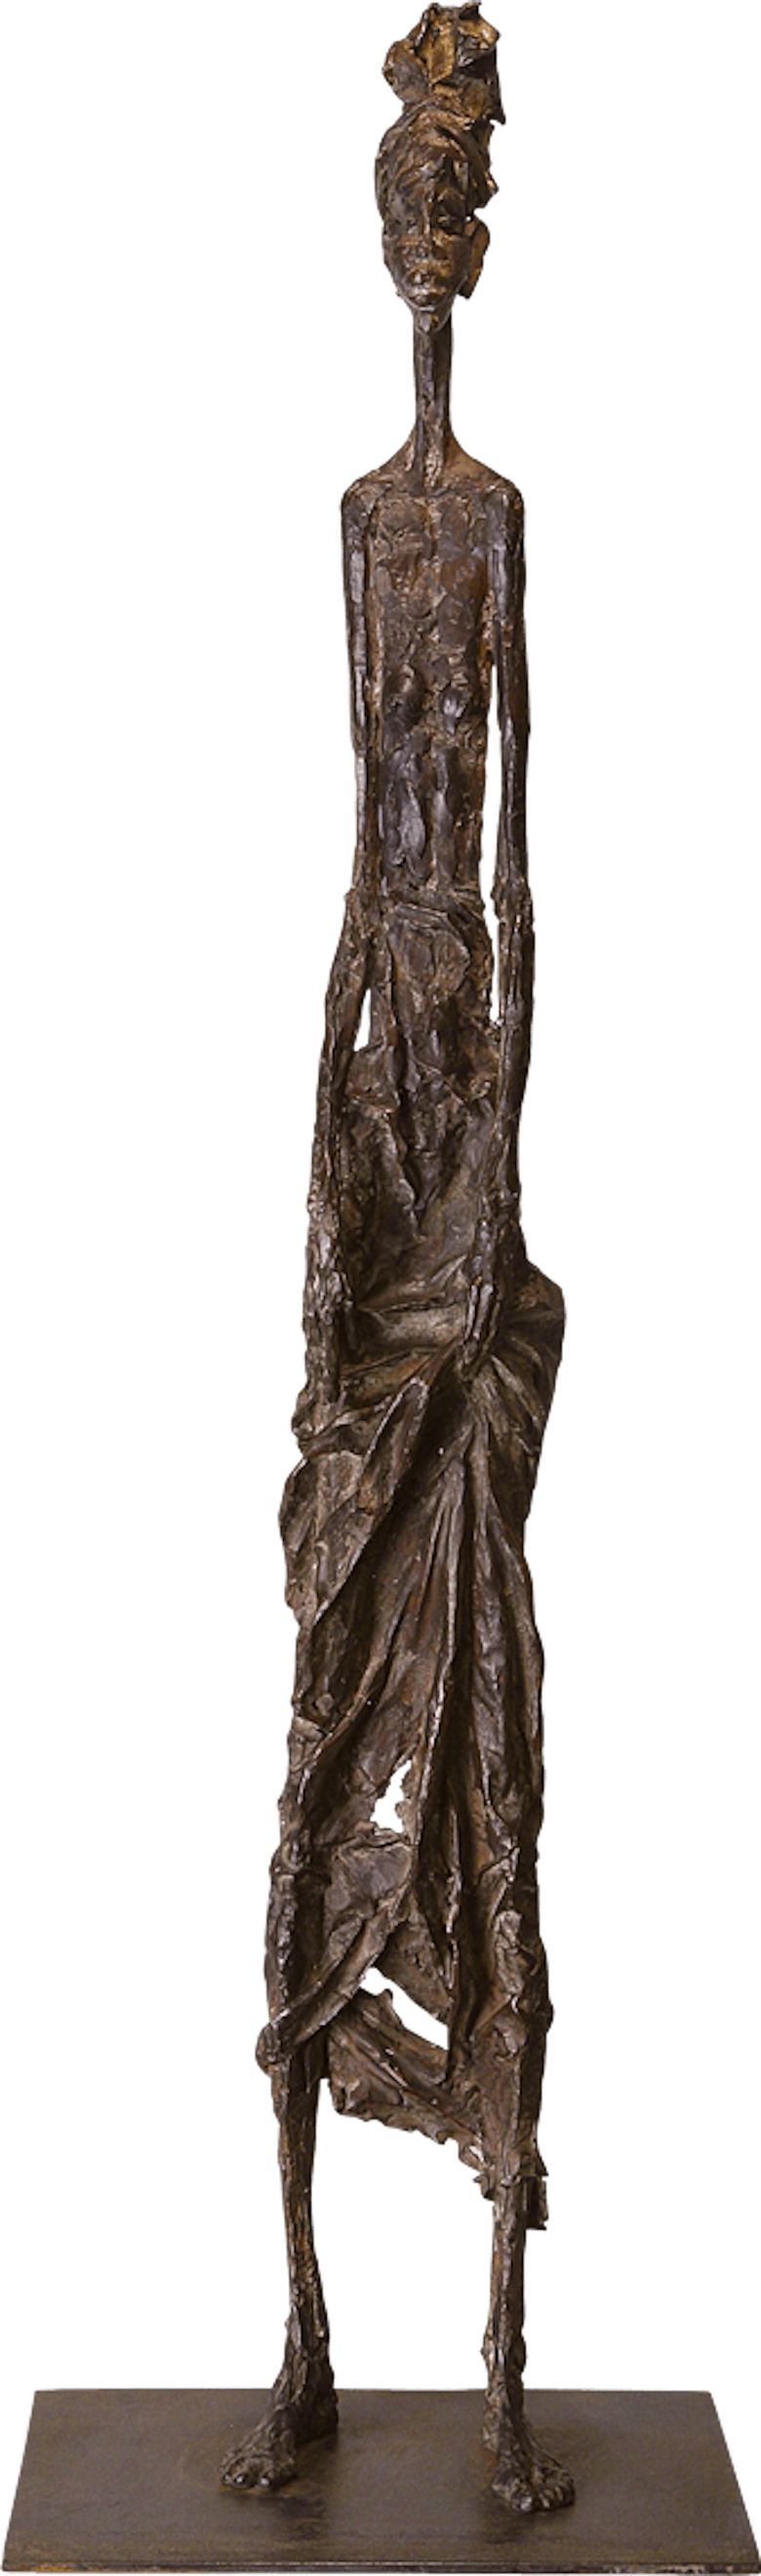 Bronzefigur Afrikanerin von Vitali Safronov